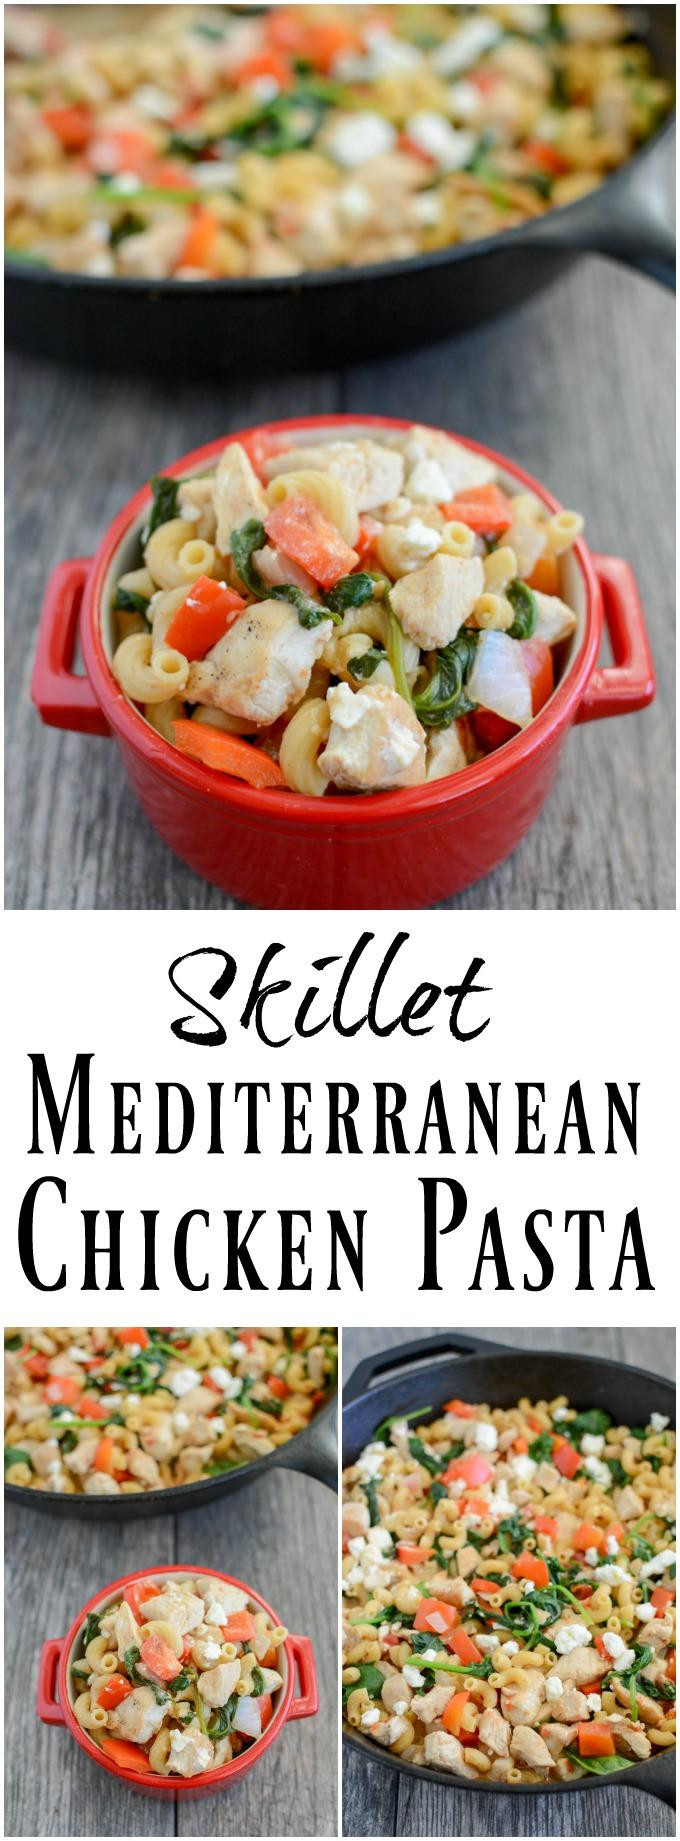 Mediterranean Dinner Recipe
 Skillet Mediterranean Chicken Pasta